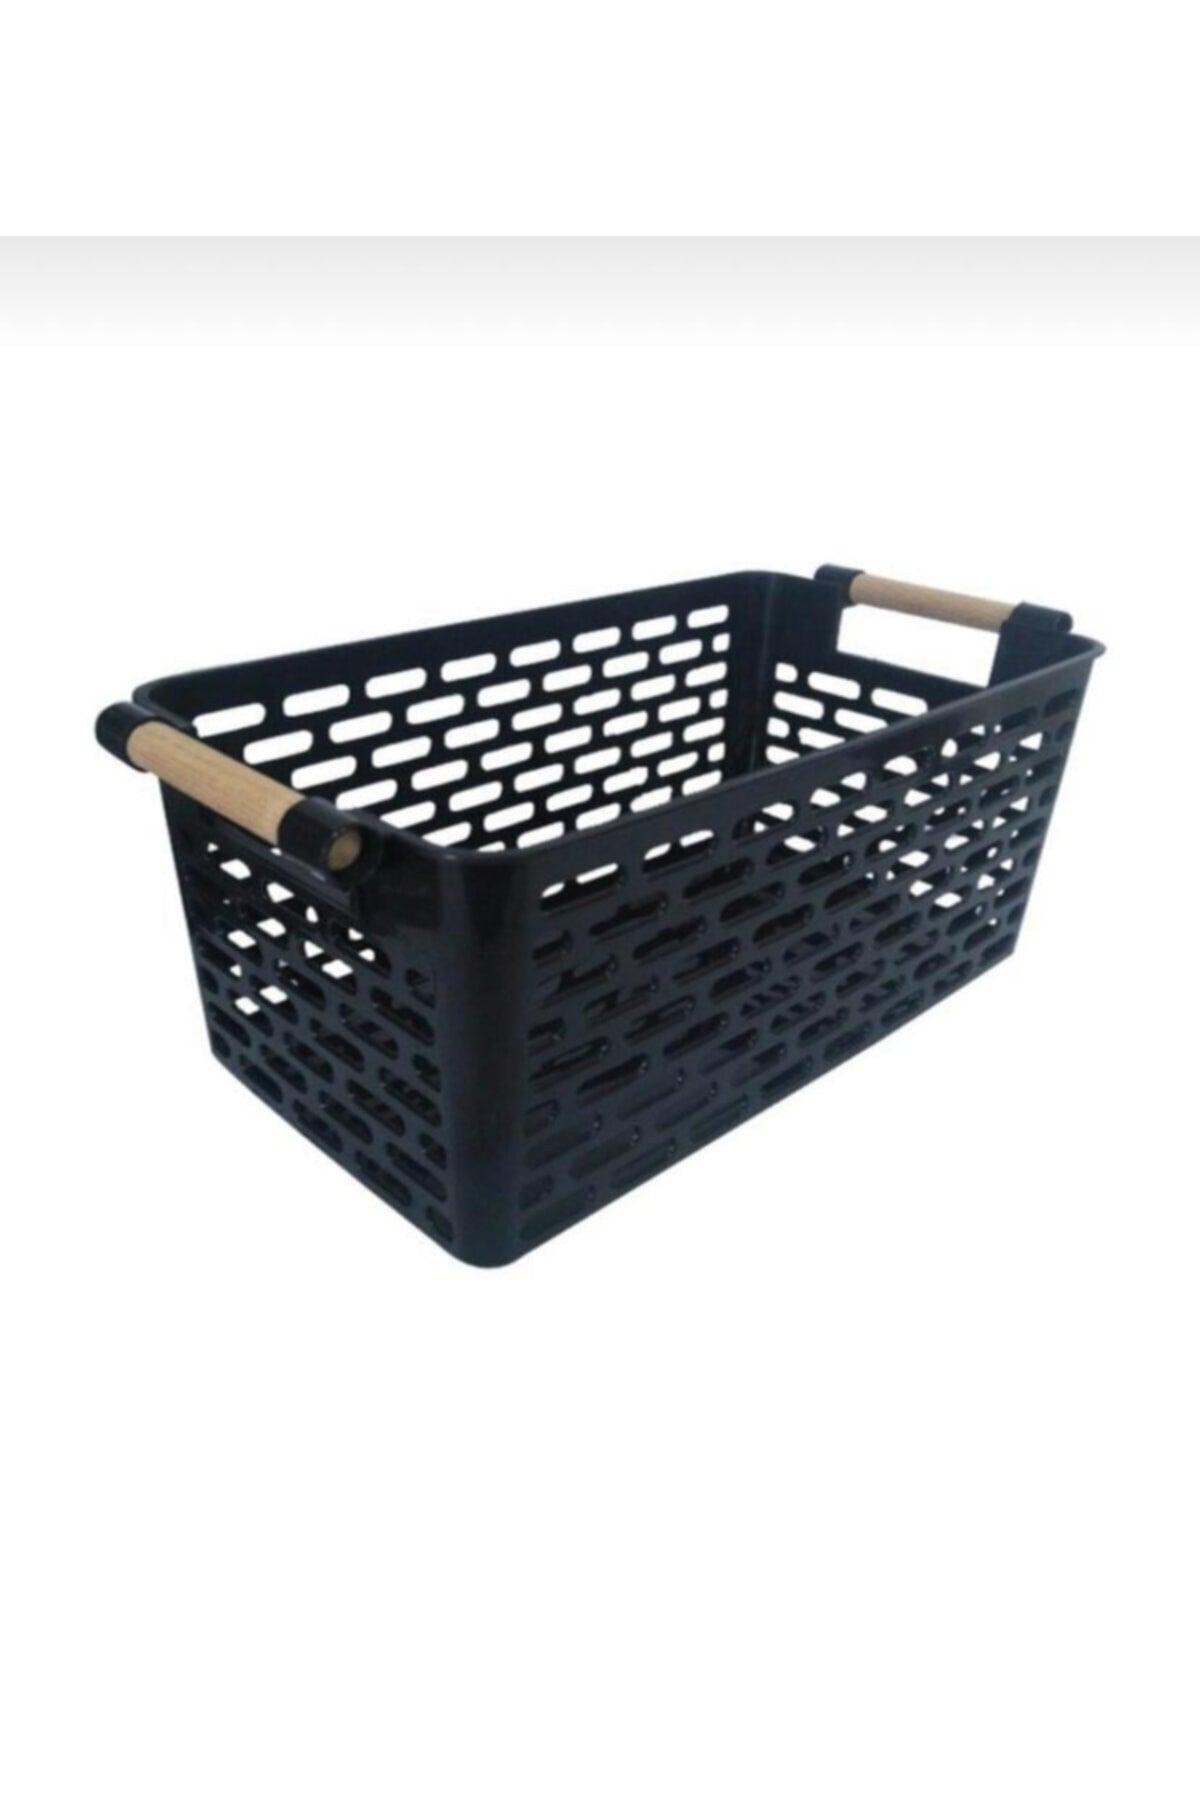 4 Wooden Handle Basket (black)